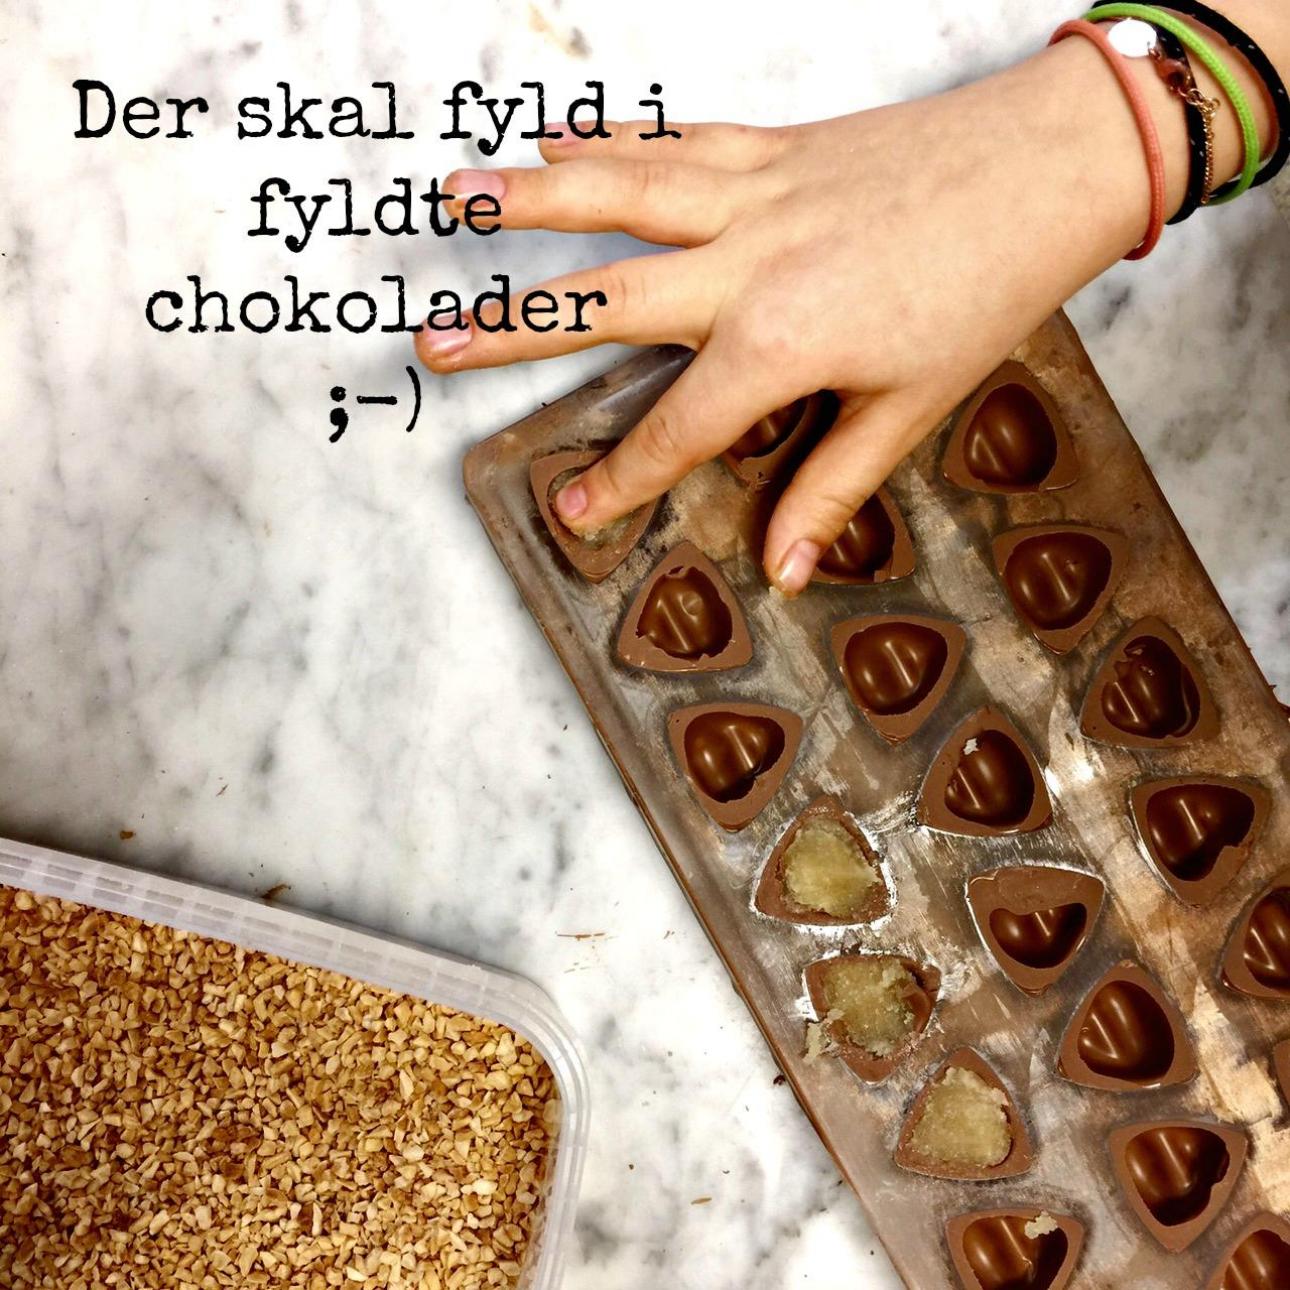 fyldte-chokolader-inspiration-til-fyld-urbannotes-dk